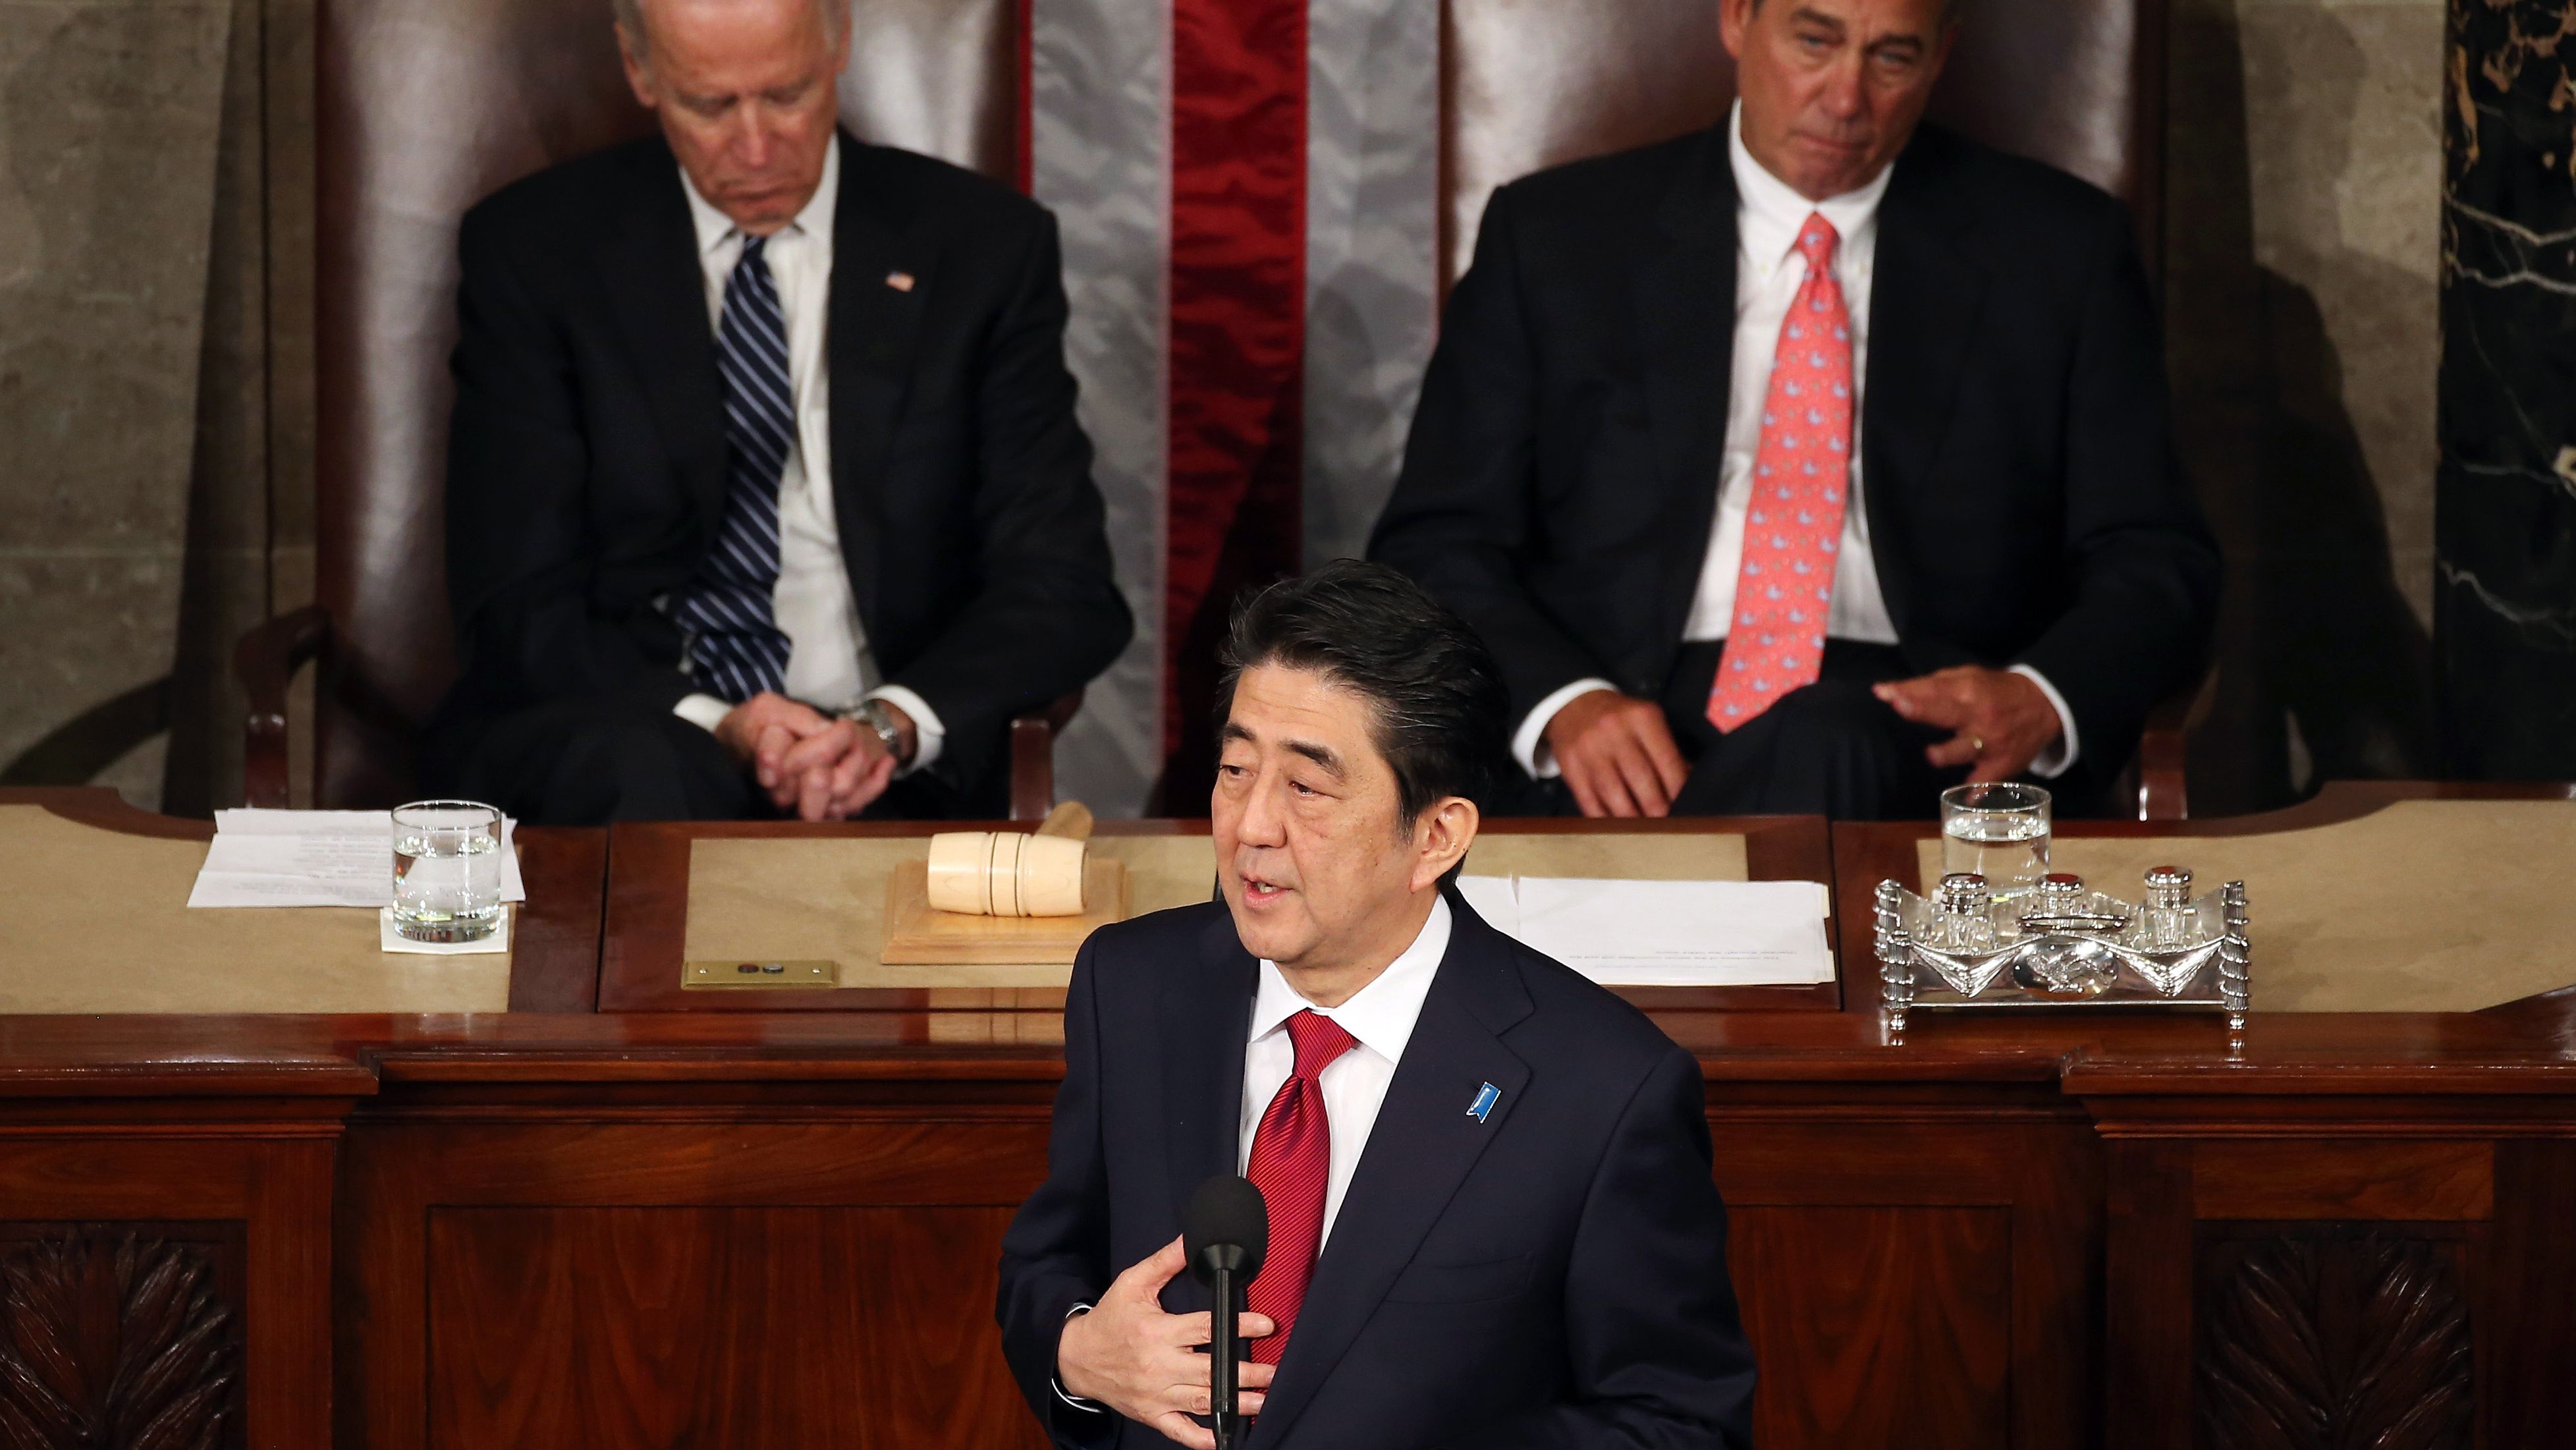 Japanese PM Shinzo Abe speaks to Congress flanked by Vice President Joe Biden (L) and House Speaker John Boehner.